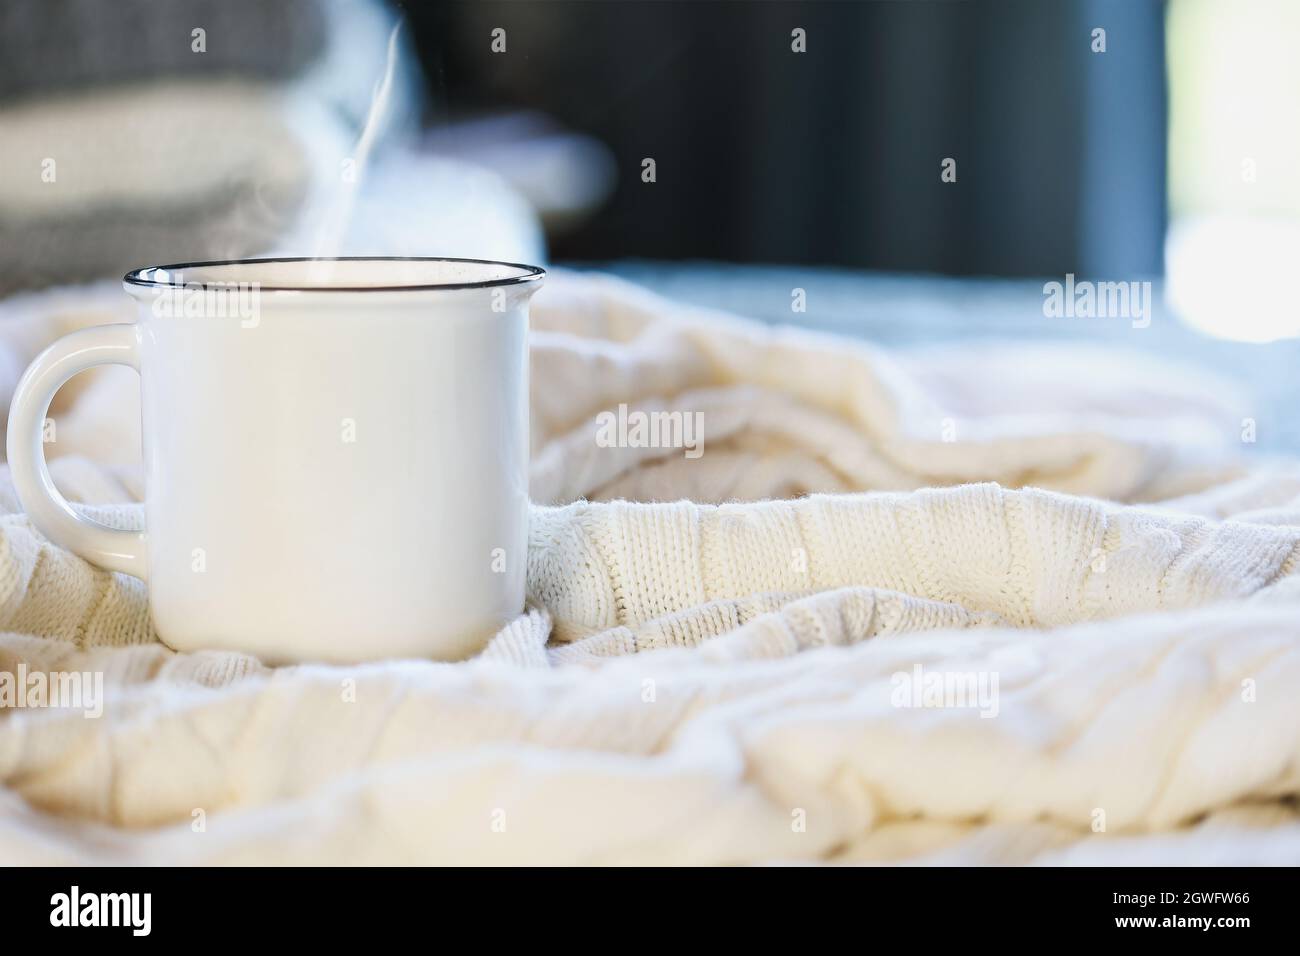 Une tasse de café chaude et chaude, assise sur le dessus d'une couverture en tricot blanc doux sur un lit avec une pile de couvertures en arrière-plan.Mise au point sélective, arrière-plan flou. Banque D'Images